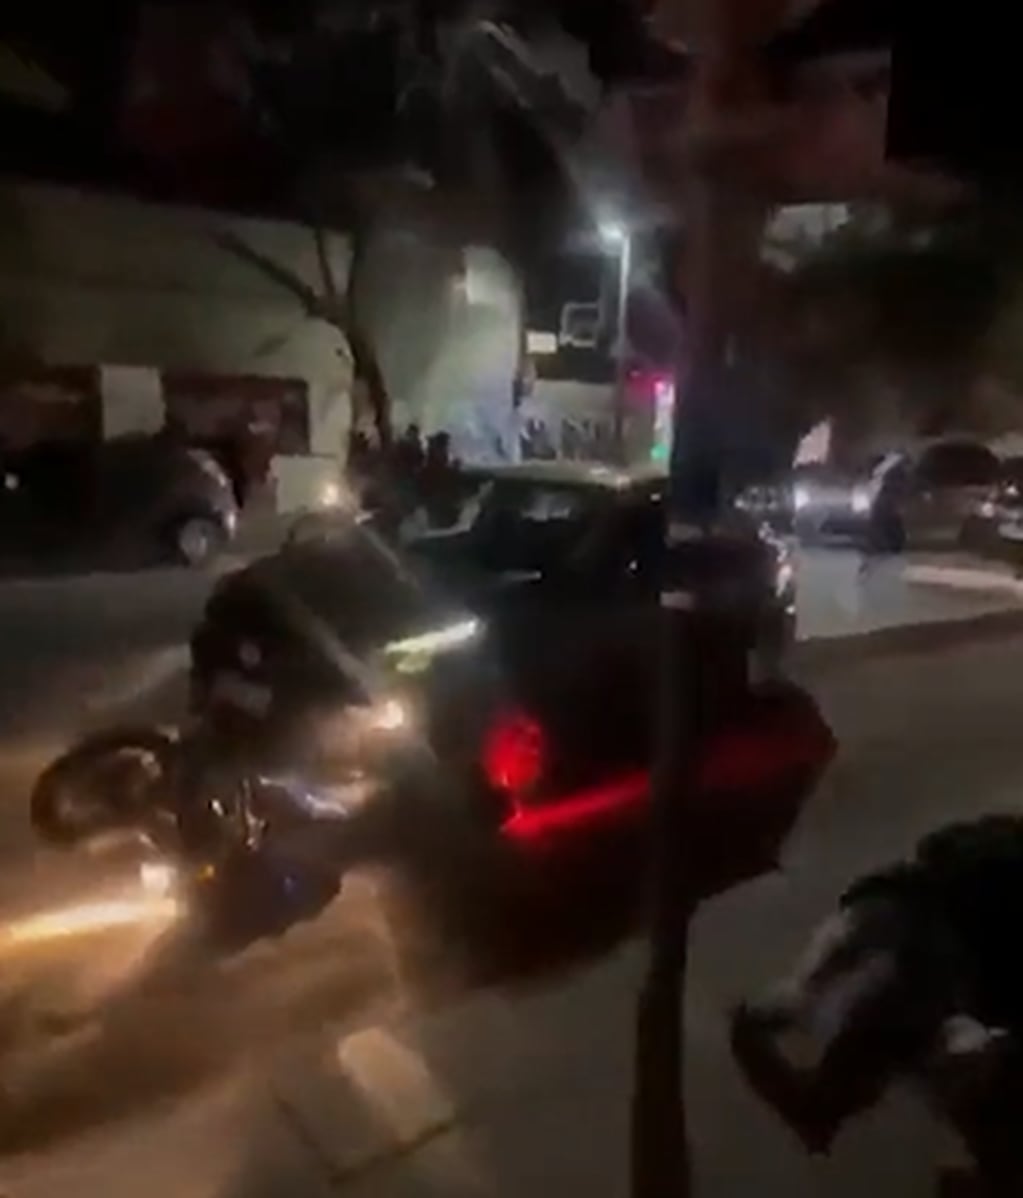 El instante en el que el taxista atropella al motociclista.